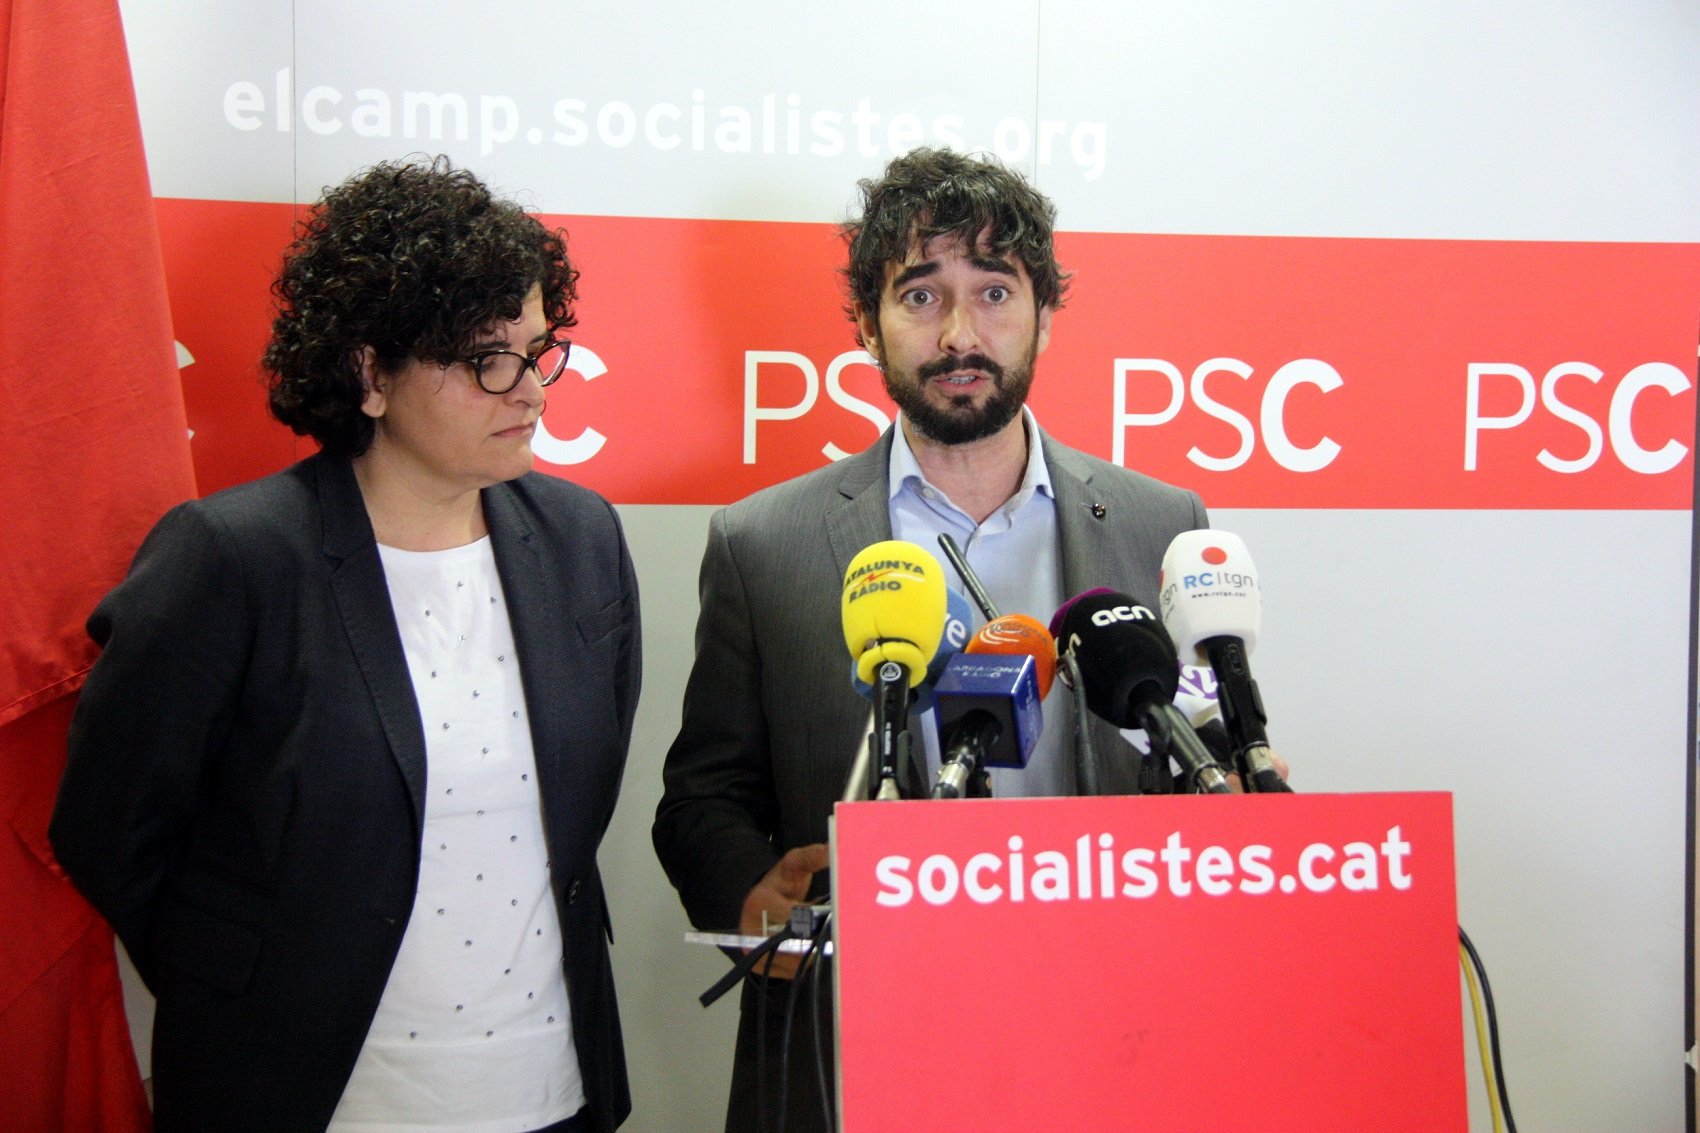 ERC ficha a un no independentista ex-PSC para las listas en Tarragona